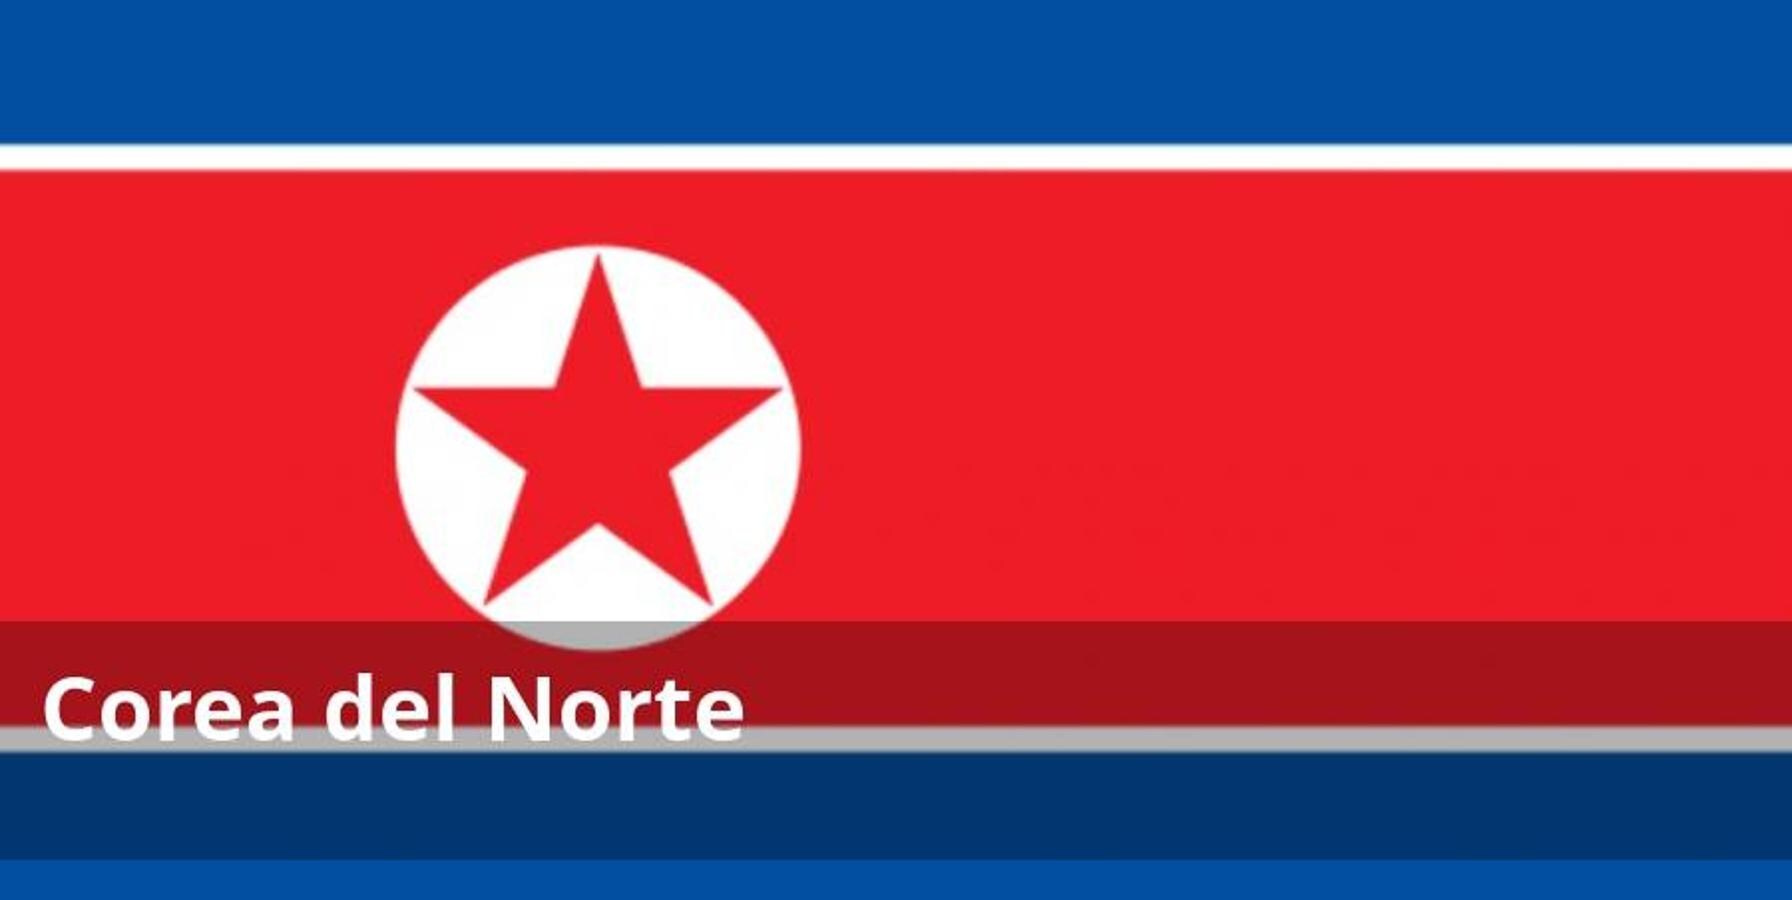 Desde el ensayo nuclear norcoreano de enero de 2016 la tensión en las relaciones intercoreanas se ha incrementado notablemente. Las relaciones con Corea del Sur siguen siendo muy delicadas, especialmente en la zona fronteriza.